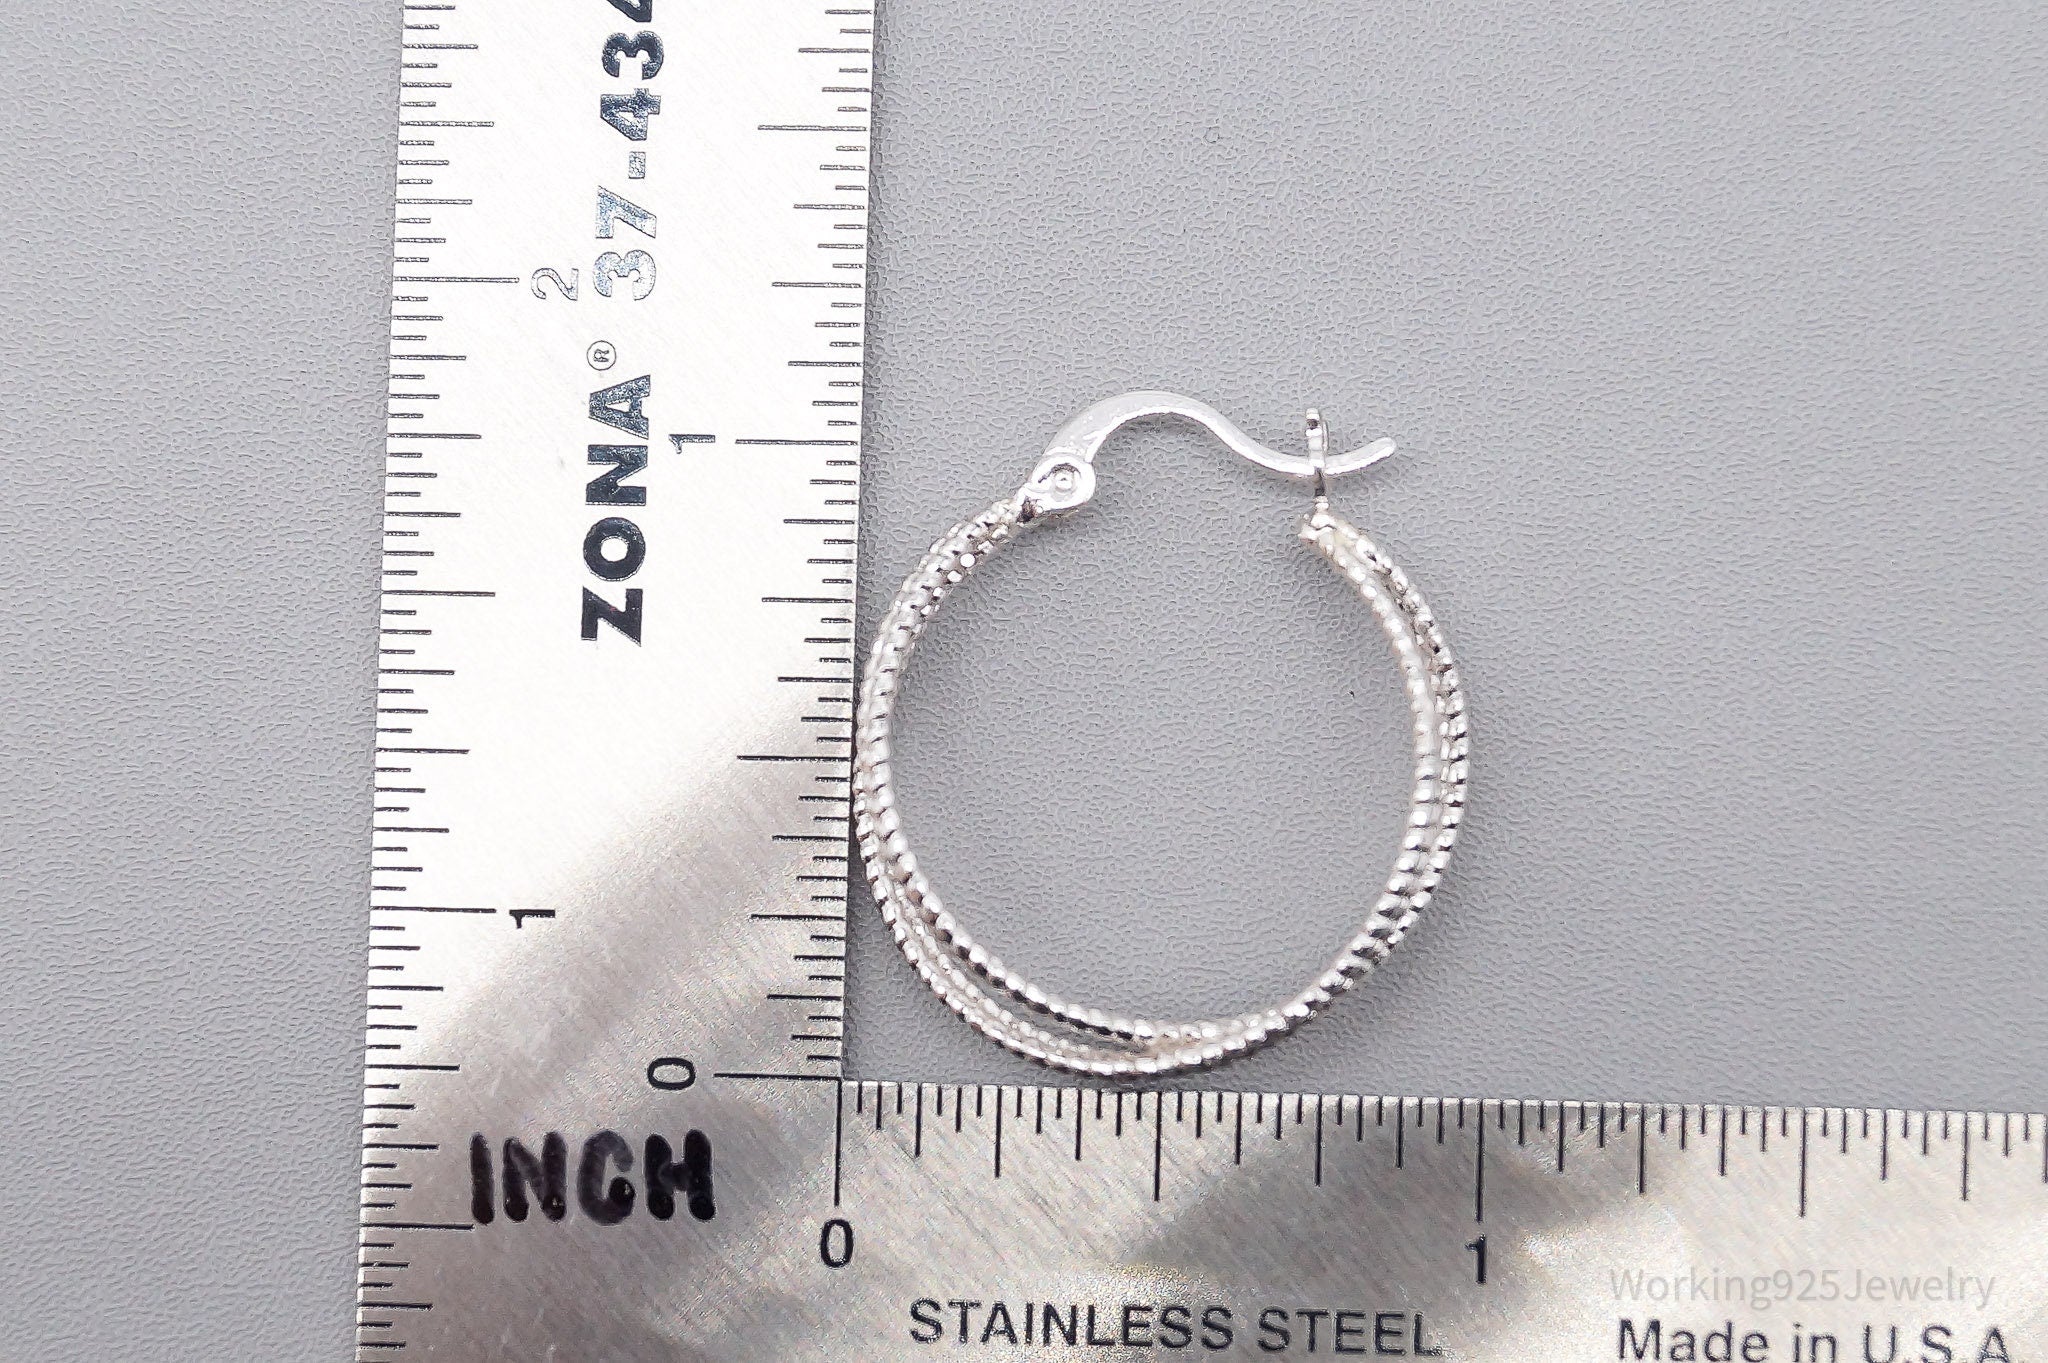 Vintage Cable Textured Silver Hoop Earrings